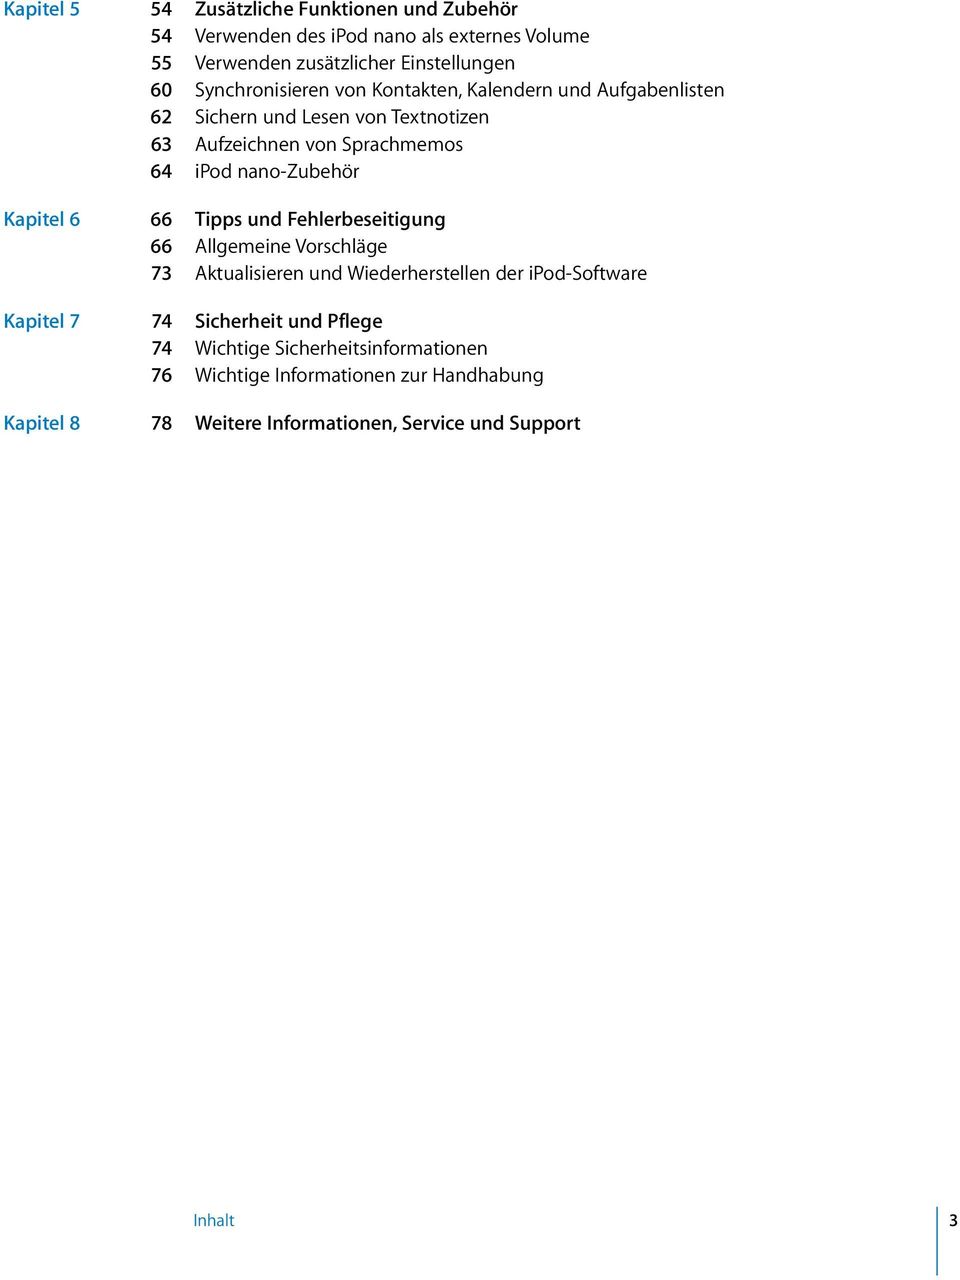 nano-zubehör Kapitel 6 66 Tipps und Fehlerbeseitigung 66 Allgemeine Vorschläge 73 Aktualisieren und Wiederherstellen der ipod-software Kapitel 7